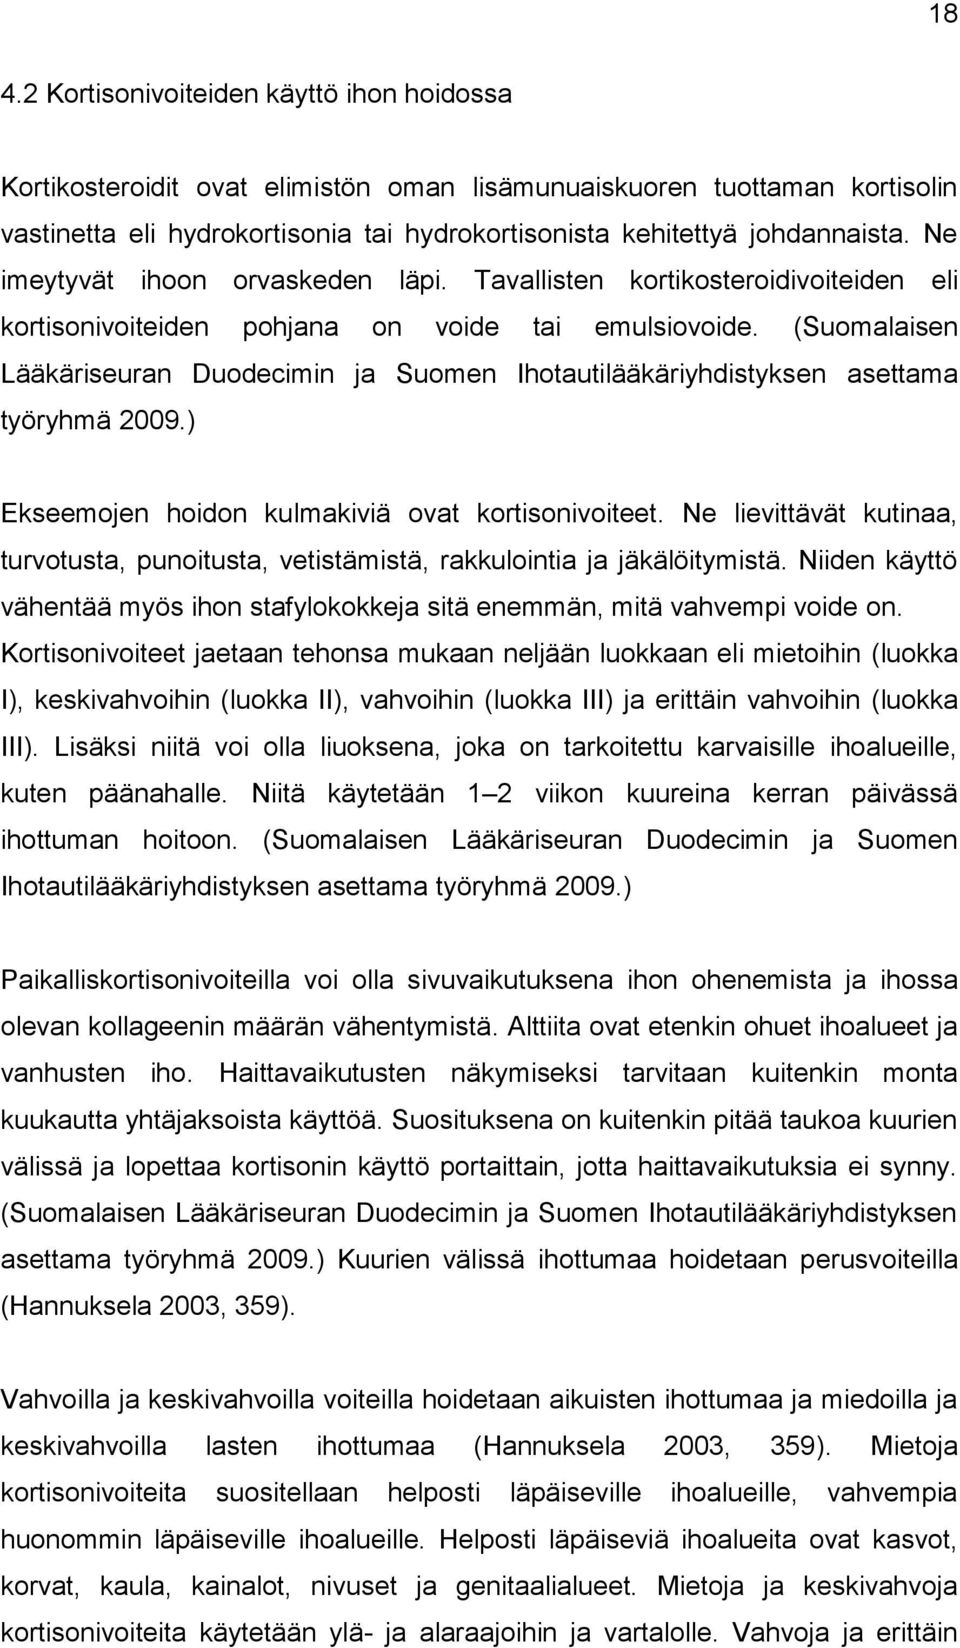 (Suomalaisen Lääkäriseuran Duodecimin ja Suomen Ihotautilääkäriyhdistyksen asettama työryhmä 2009.) Ekseemojen hoidon kulmakiviä ovat kortisonivoiteet.